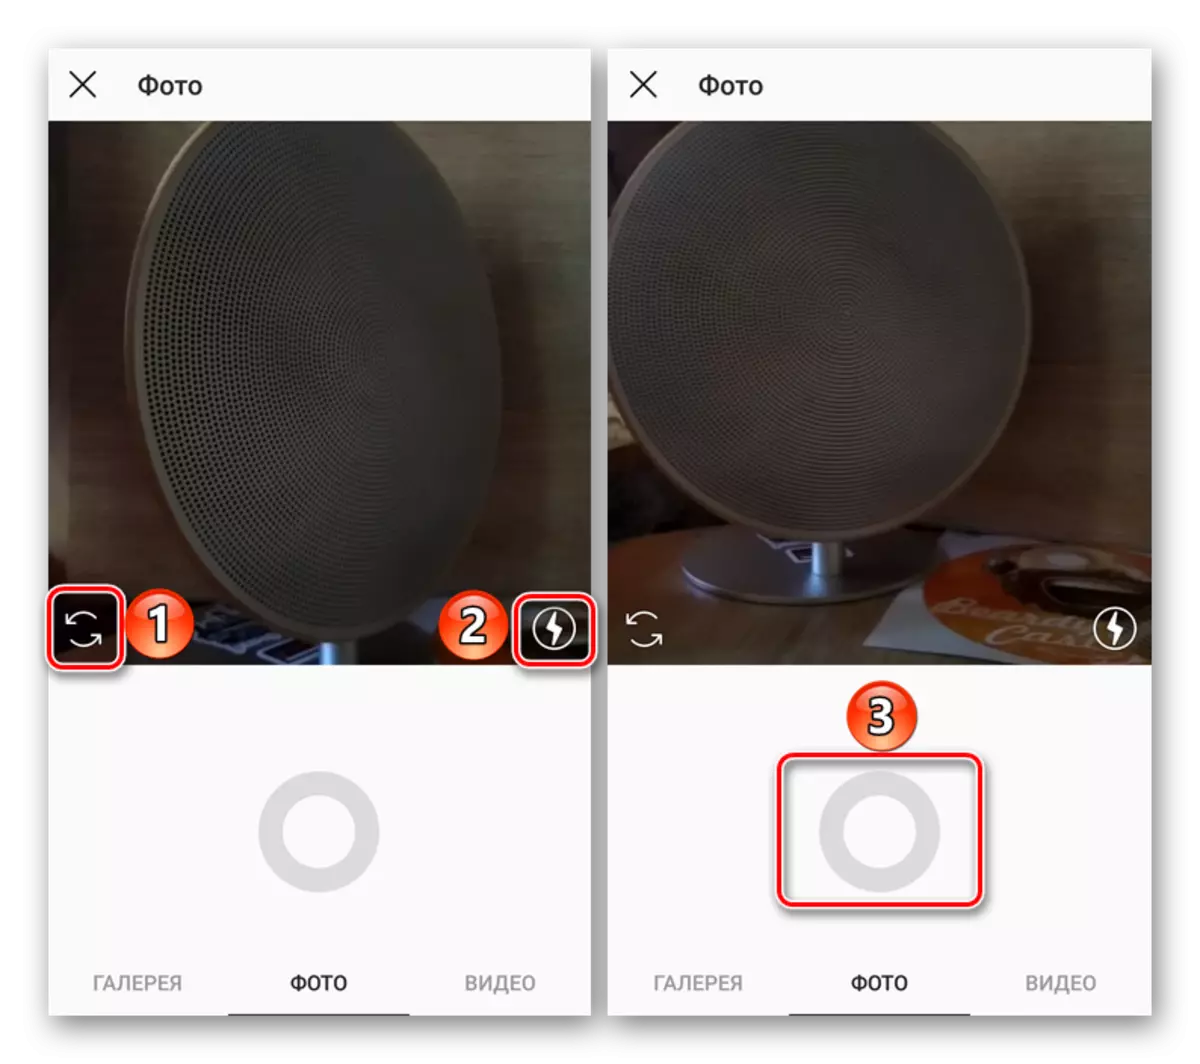 Interface sareng alat kaméra dina aplikasi Instagram pikeun Android